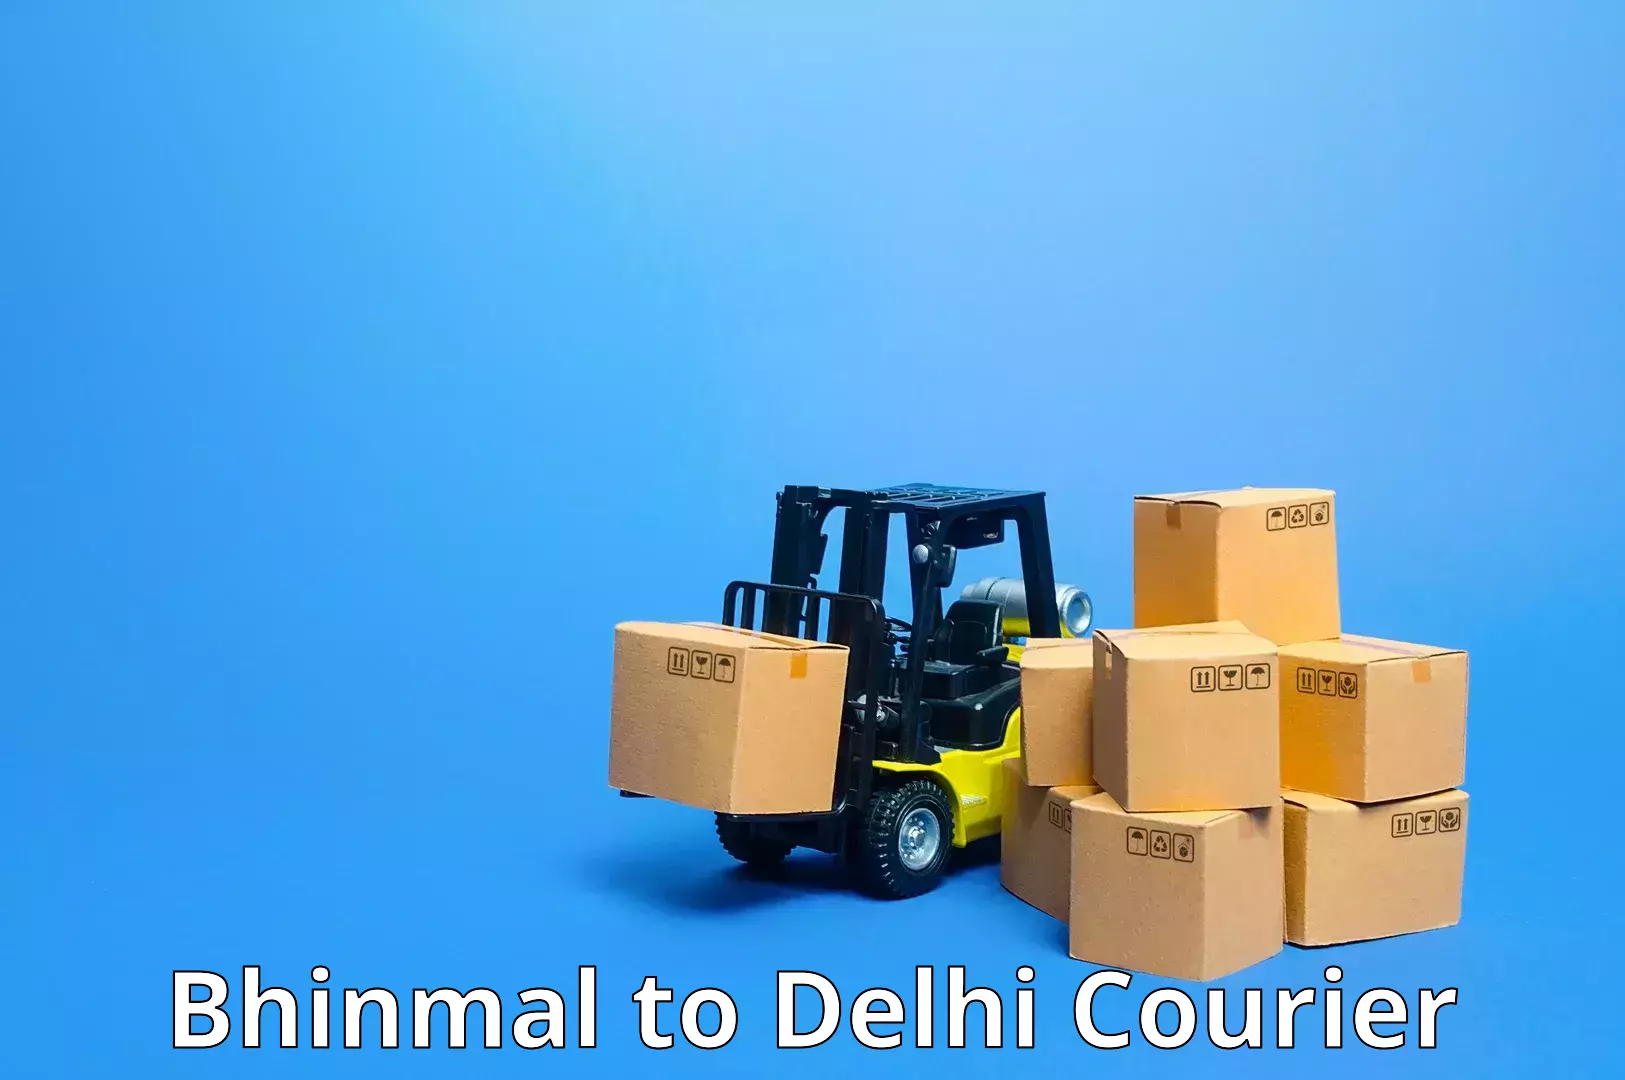 Express package handling Bhinmal to Delhi